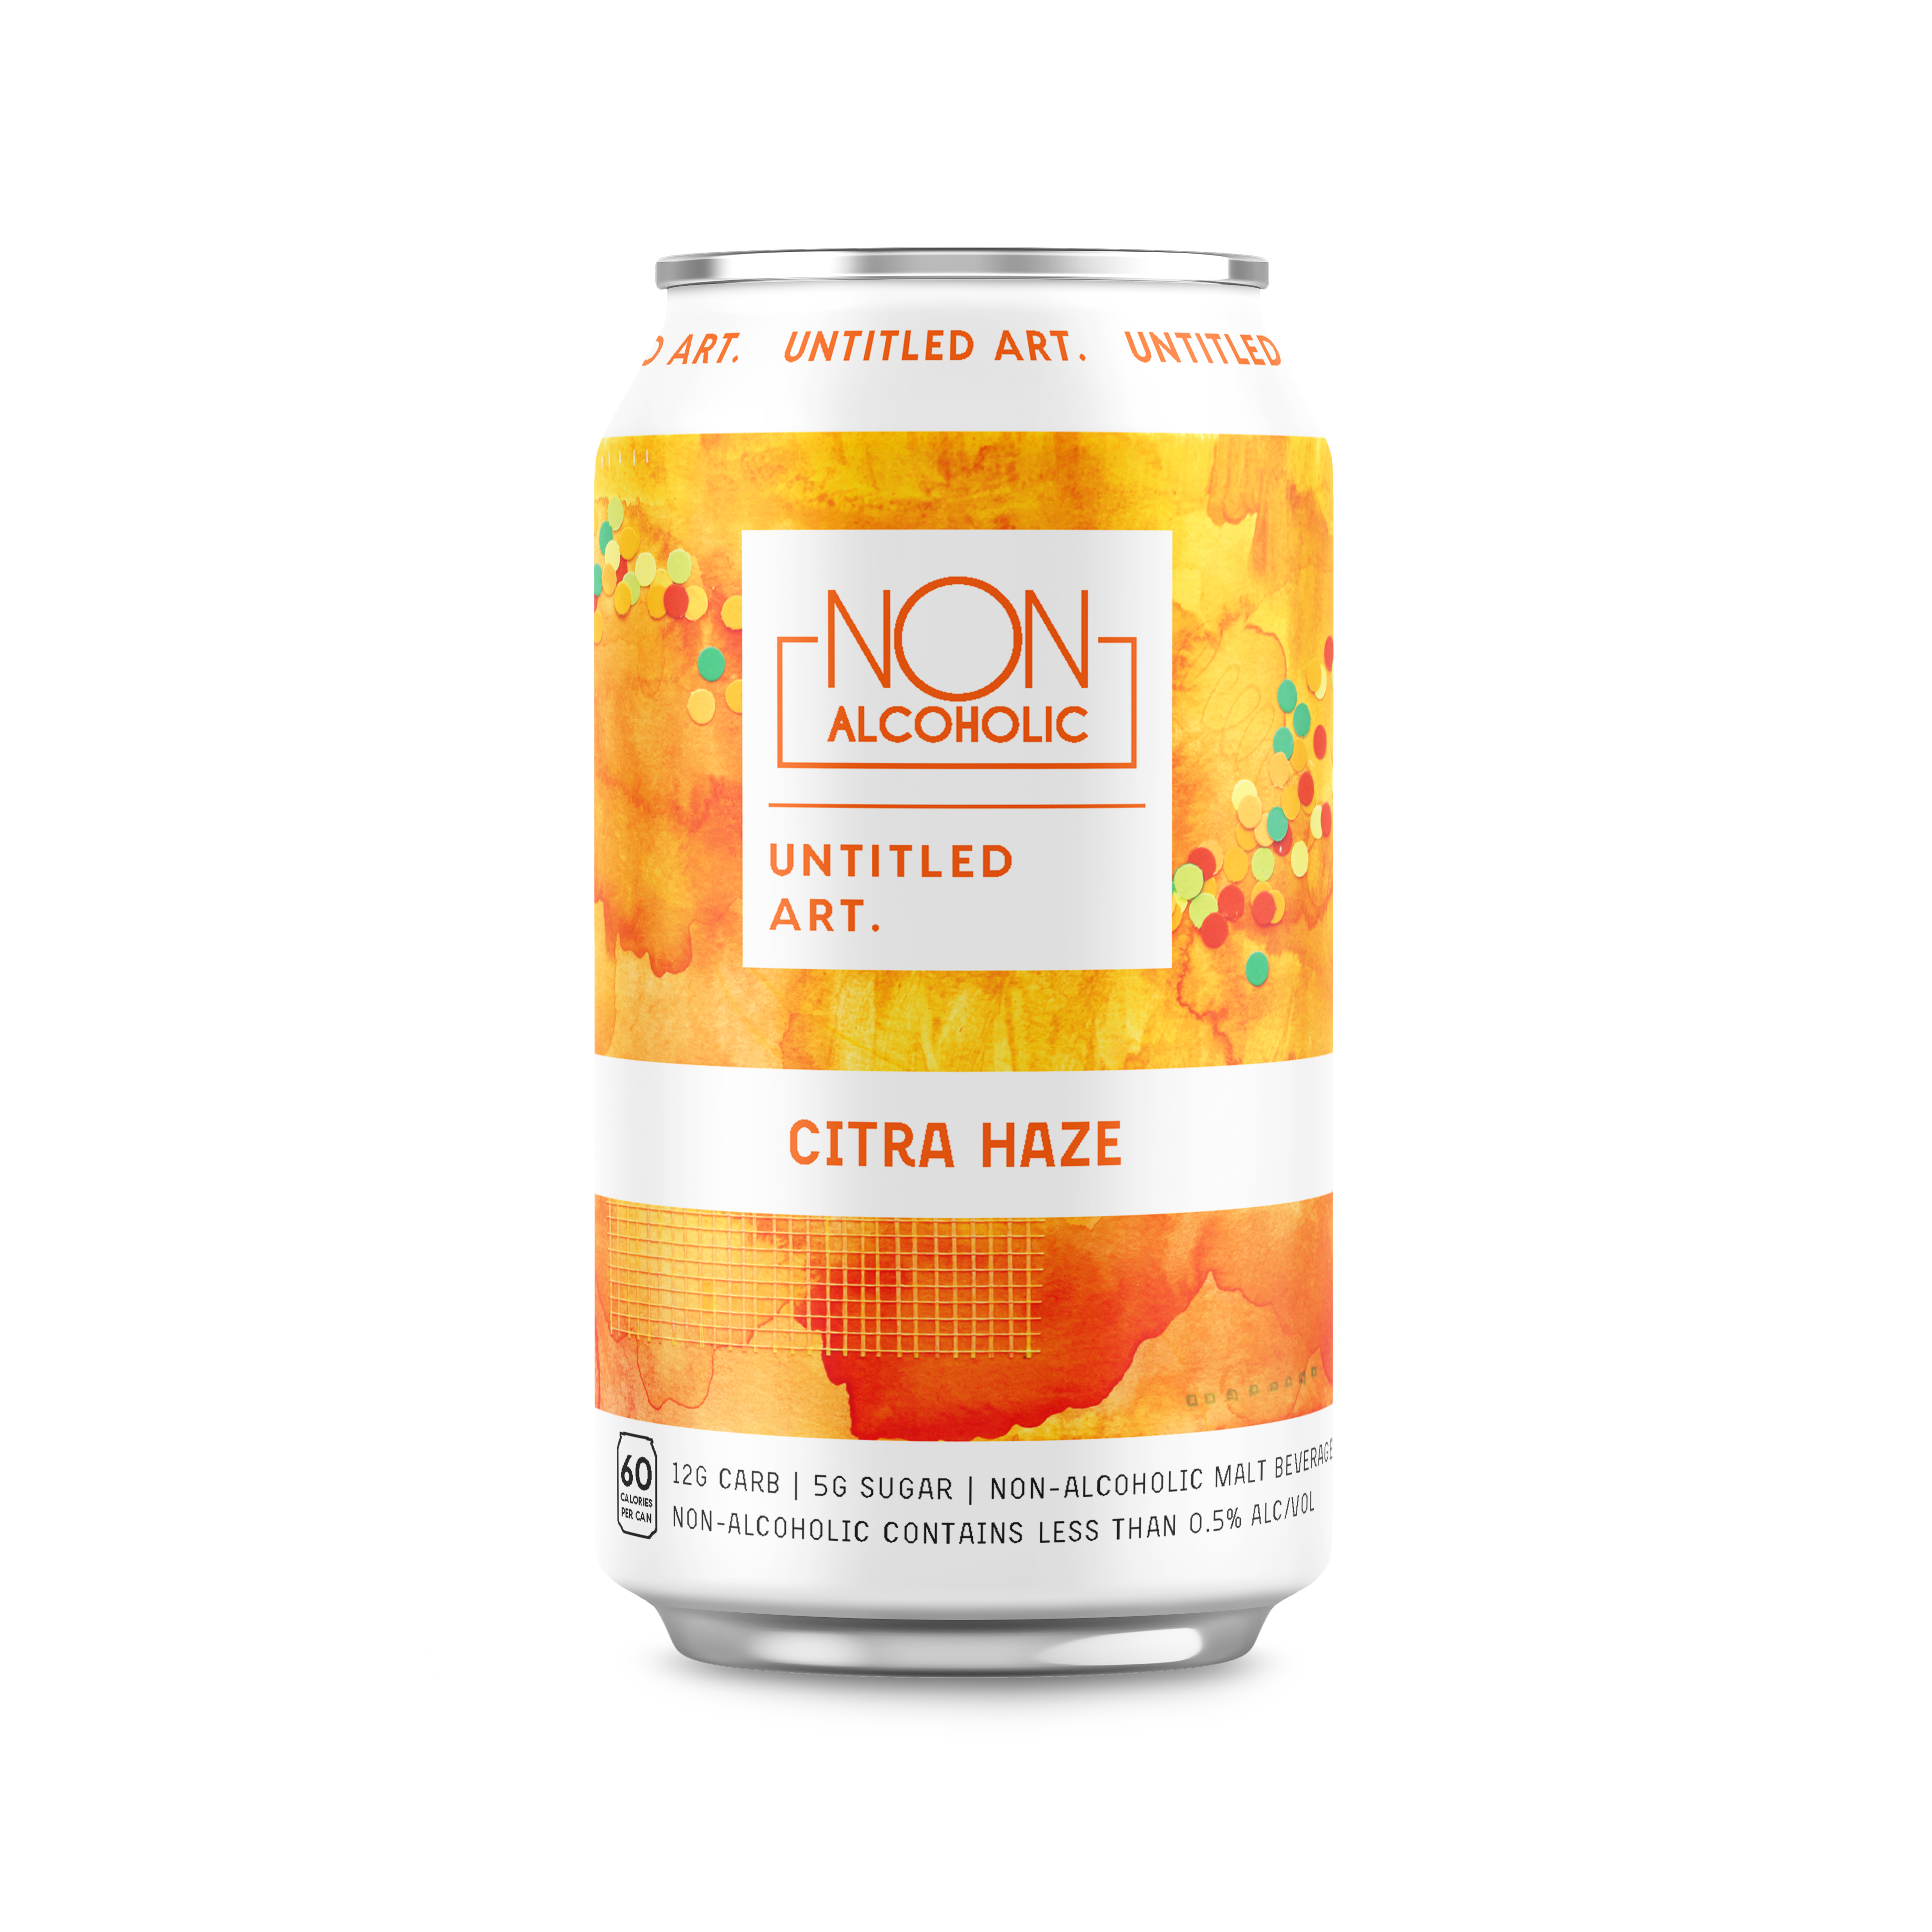 A can of non-alcoholic citrus haze.